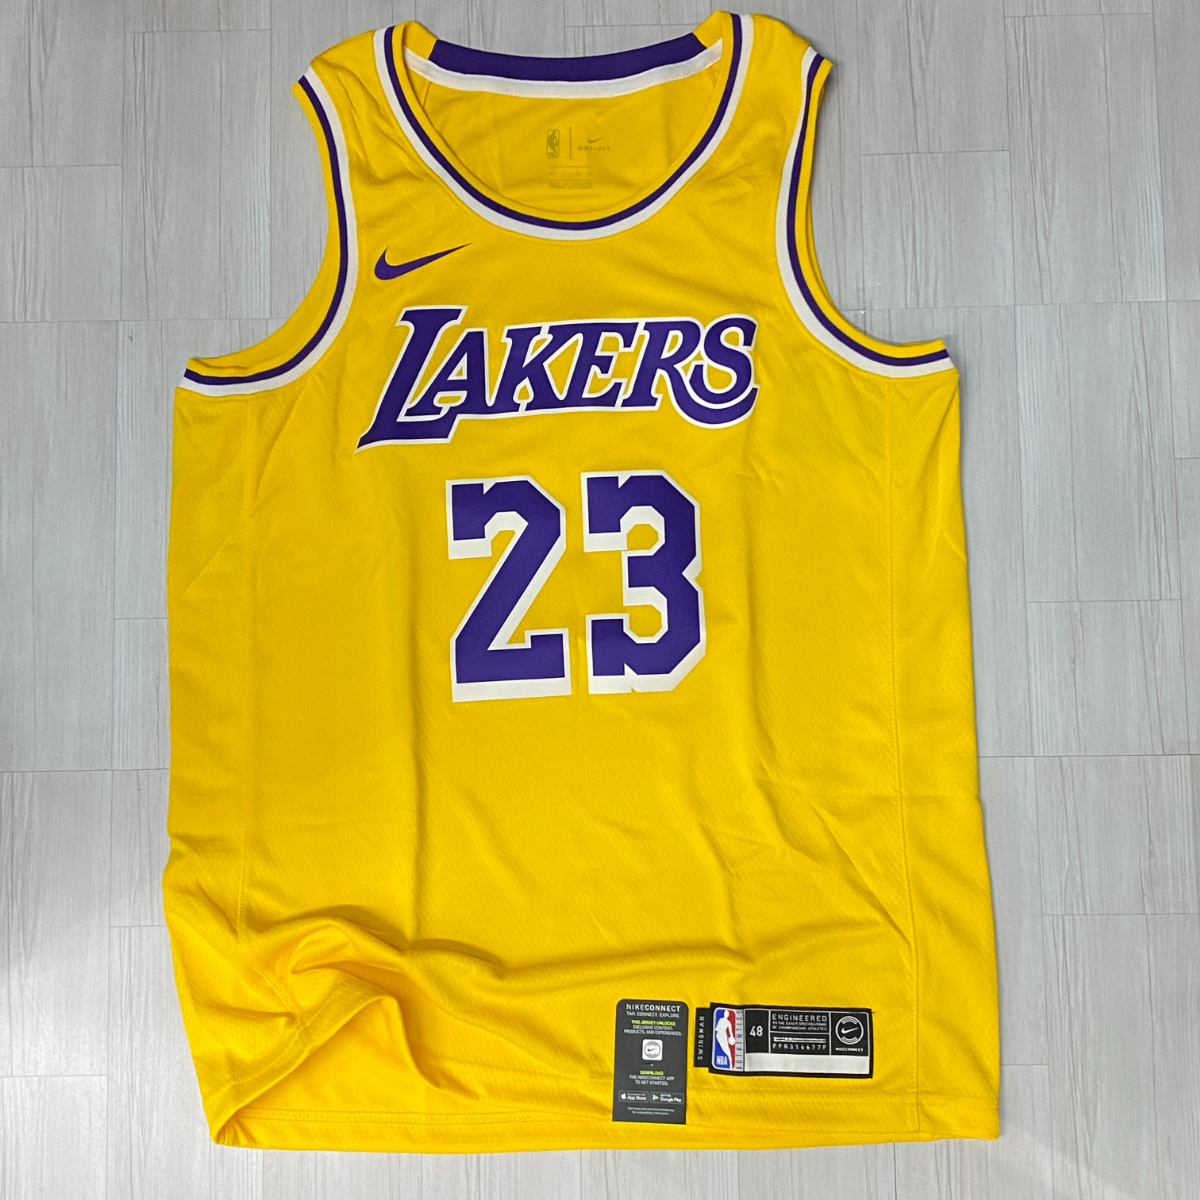 USA正規品 【XL】 NIKE ナイキ NBA ロサンゼルス レイカーズ LA LAKERS レブロンジェームズ 背番号23 オーセンティック バスケシャツ GOLD